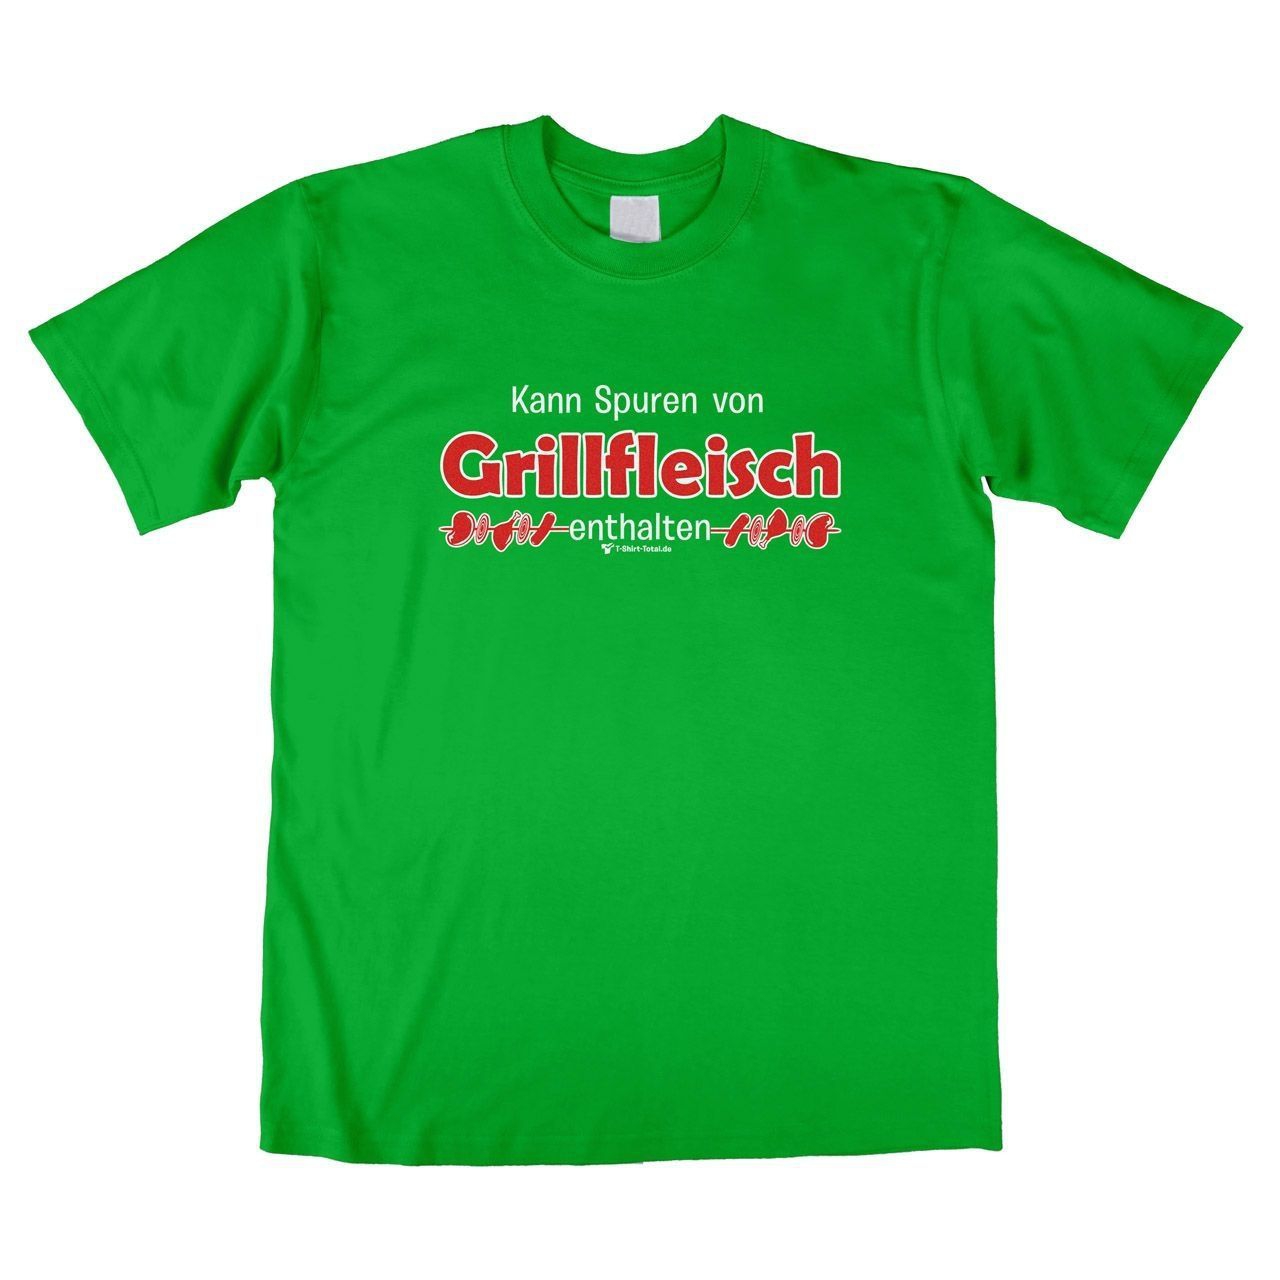 Spuren von Grillfleisch Unisex T-Shirt grün Extra Large